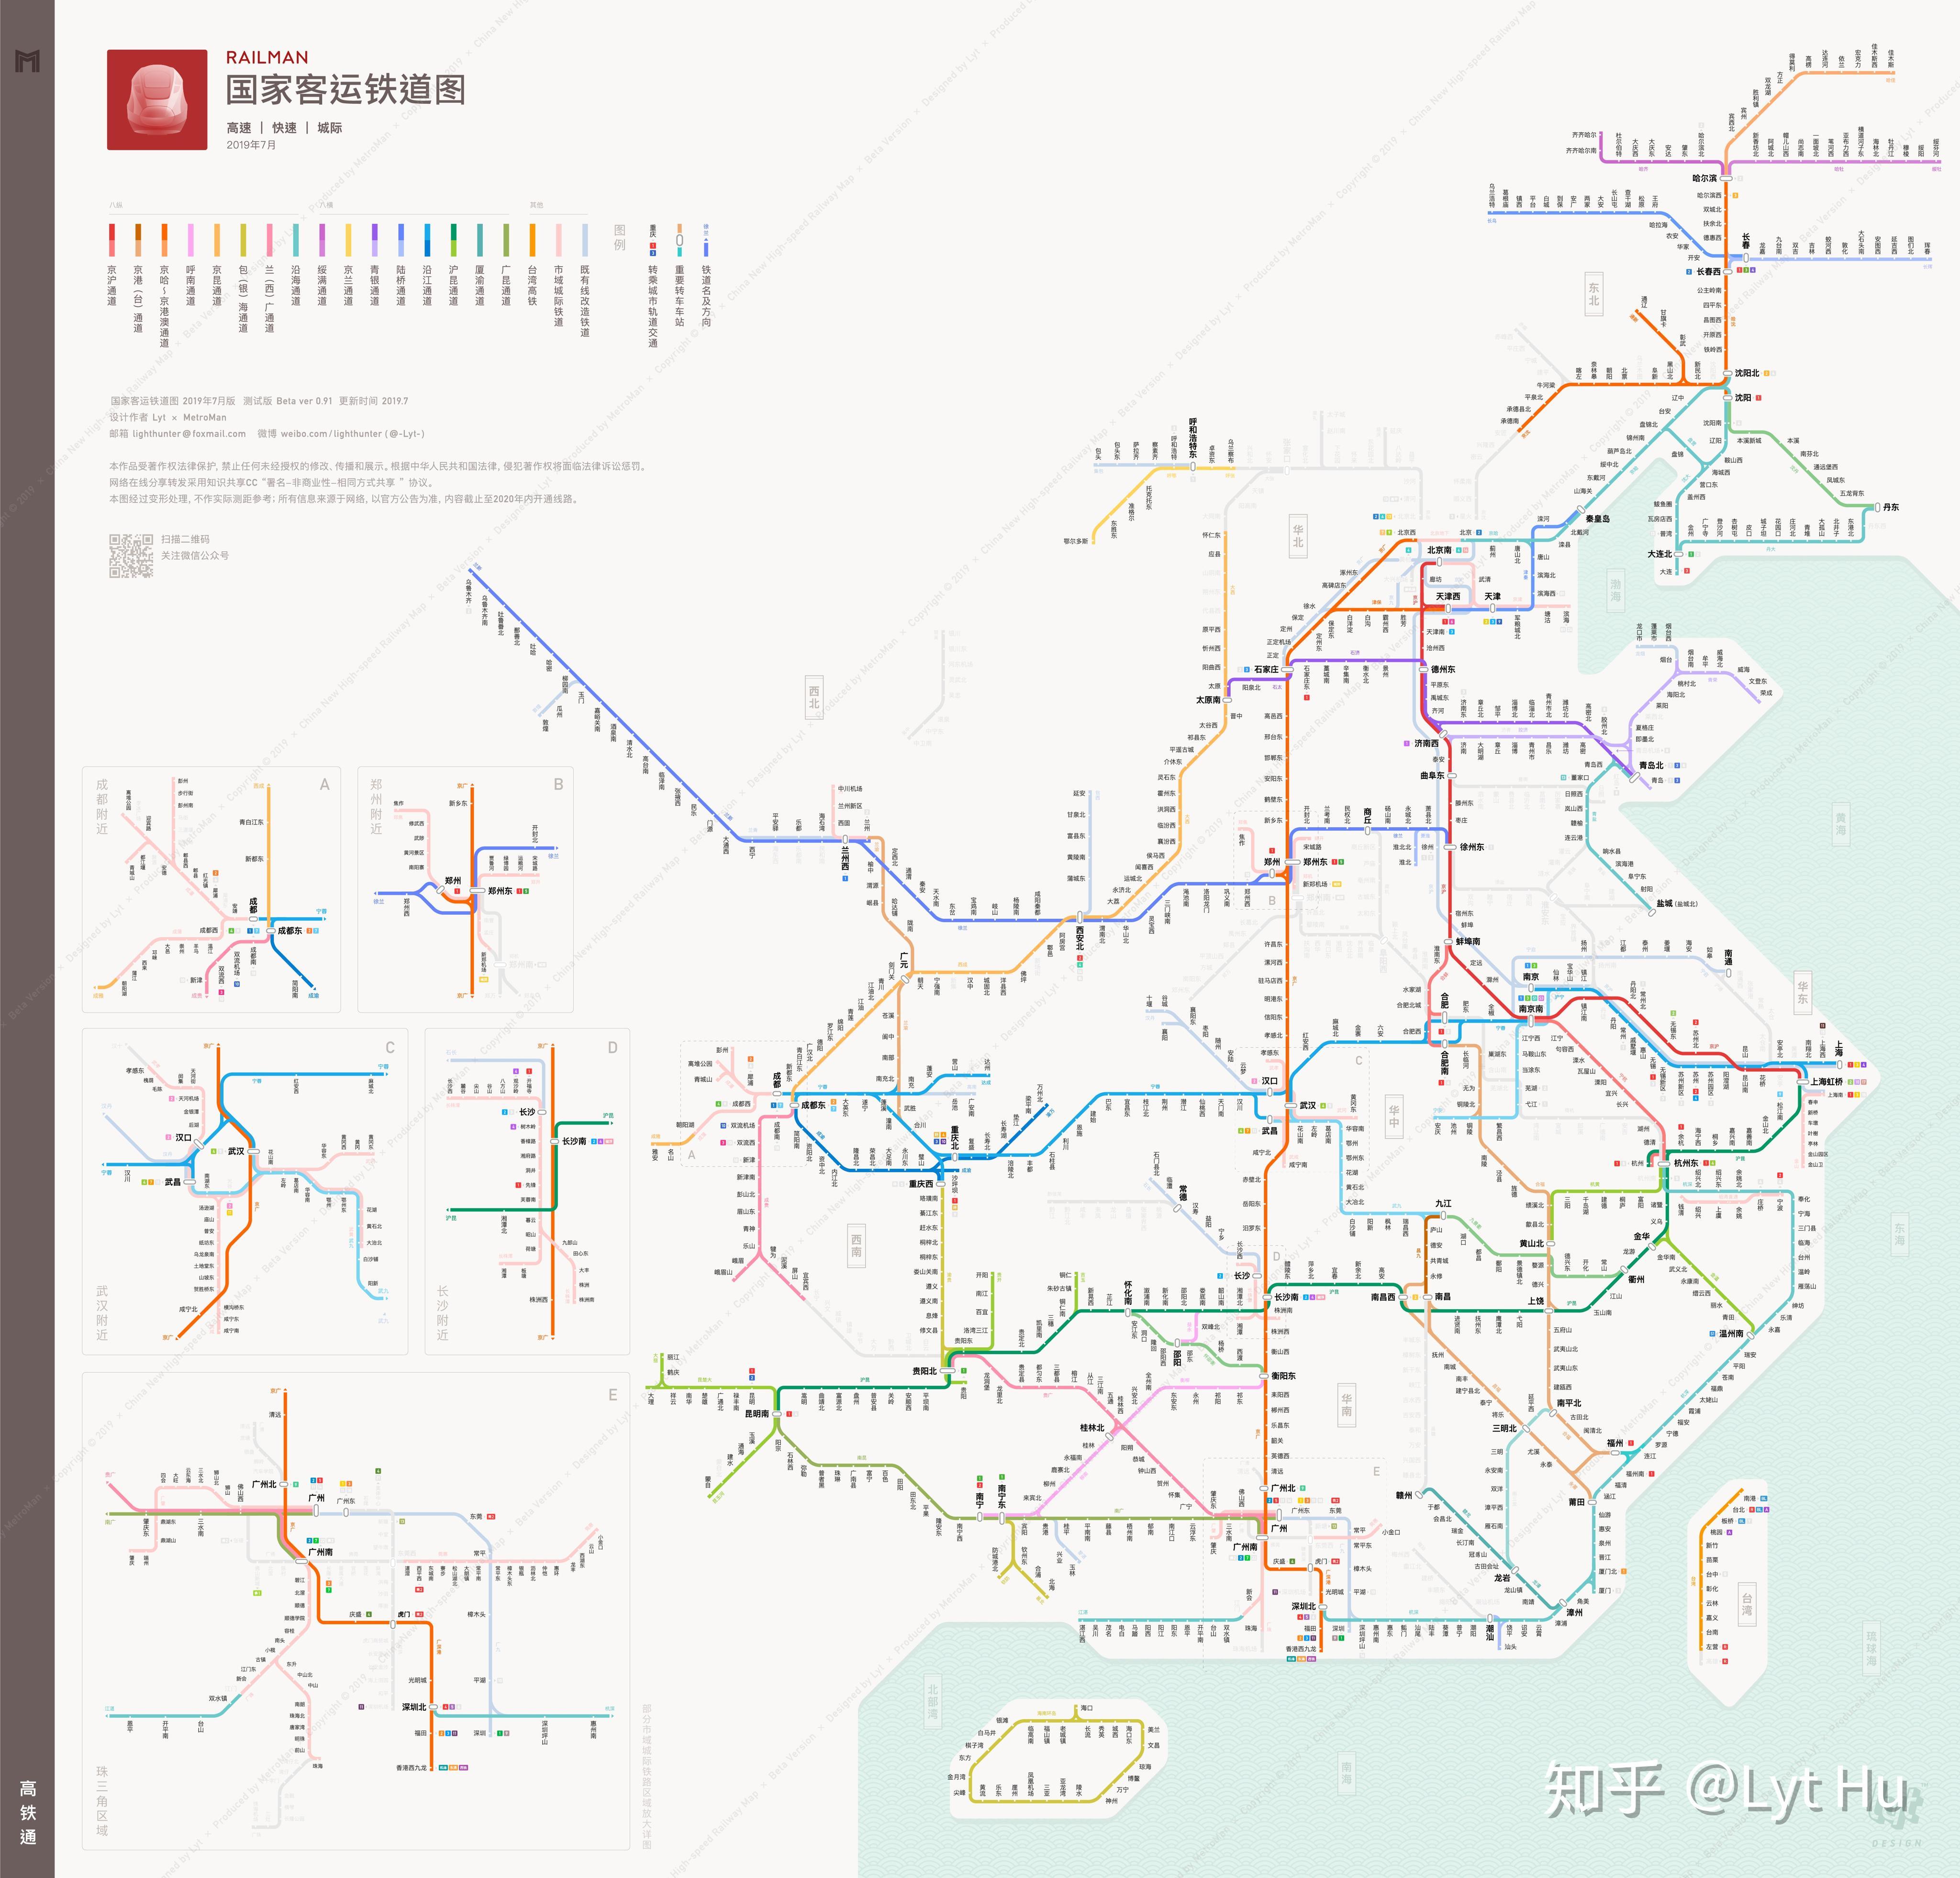 梅汕客专开通运营 粤东北地区正式接入全国高铁网络-千龙网·中国首都网